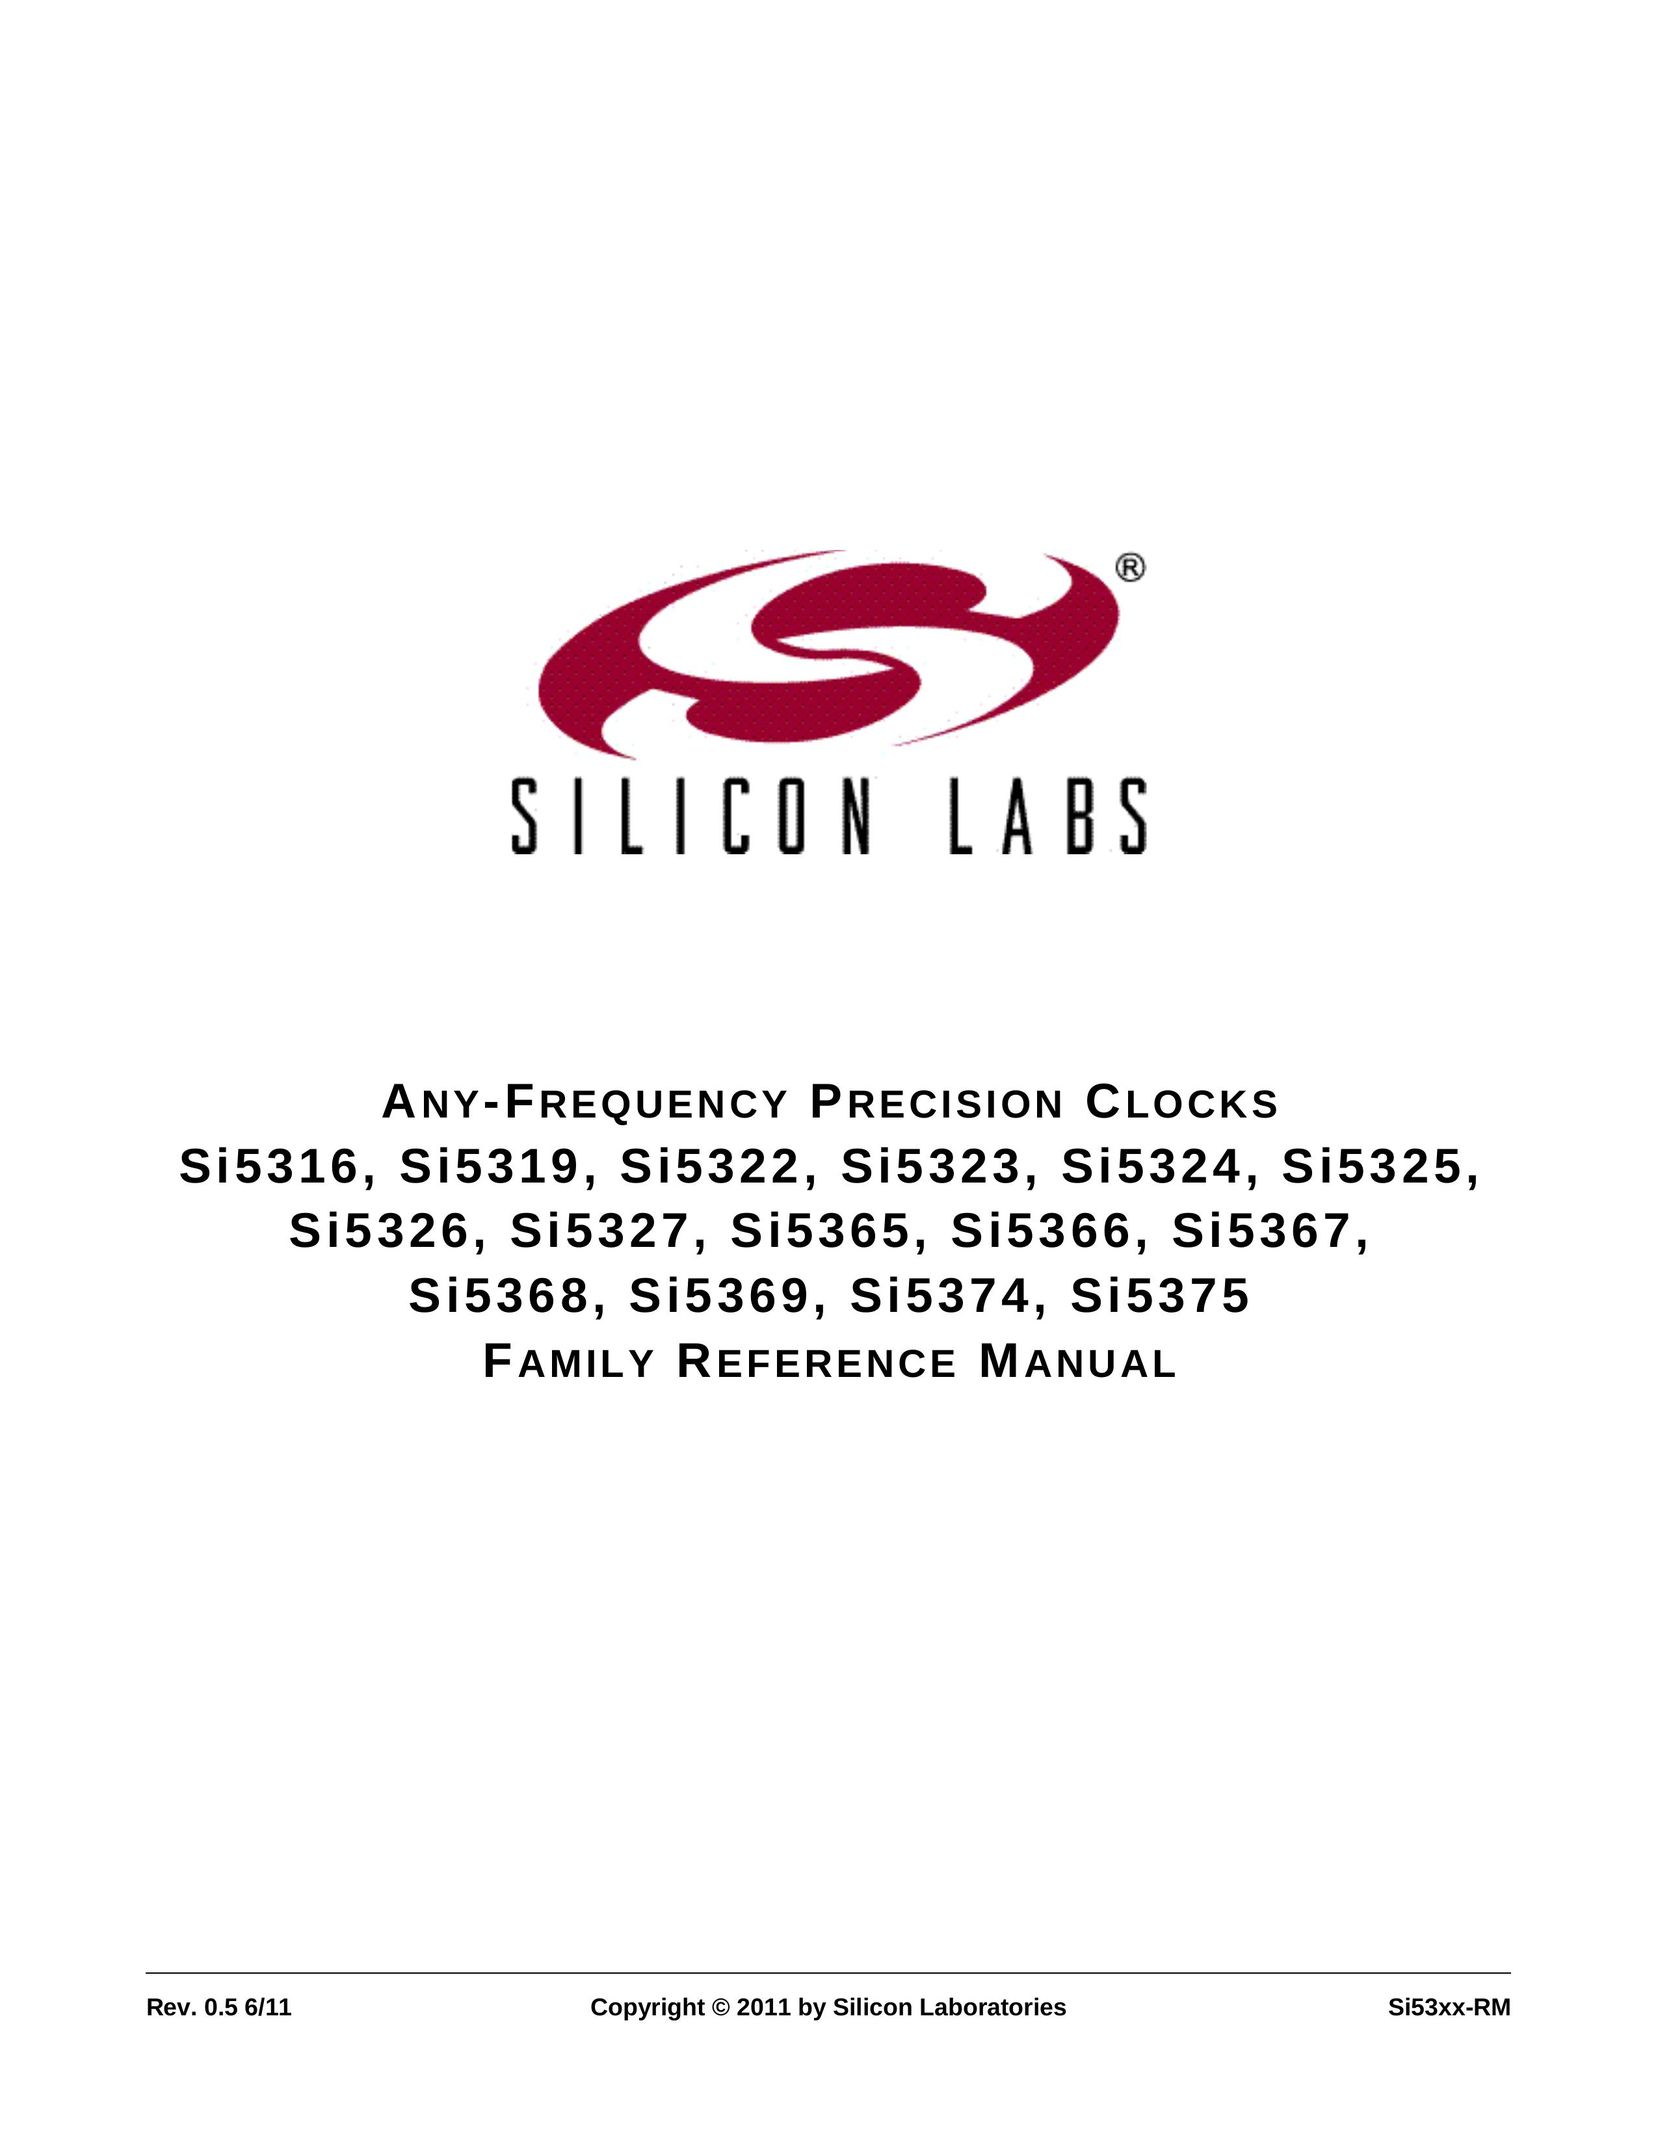 Silicon Laboratories SI5325 Clock User Manual